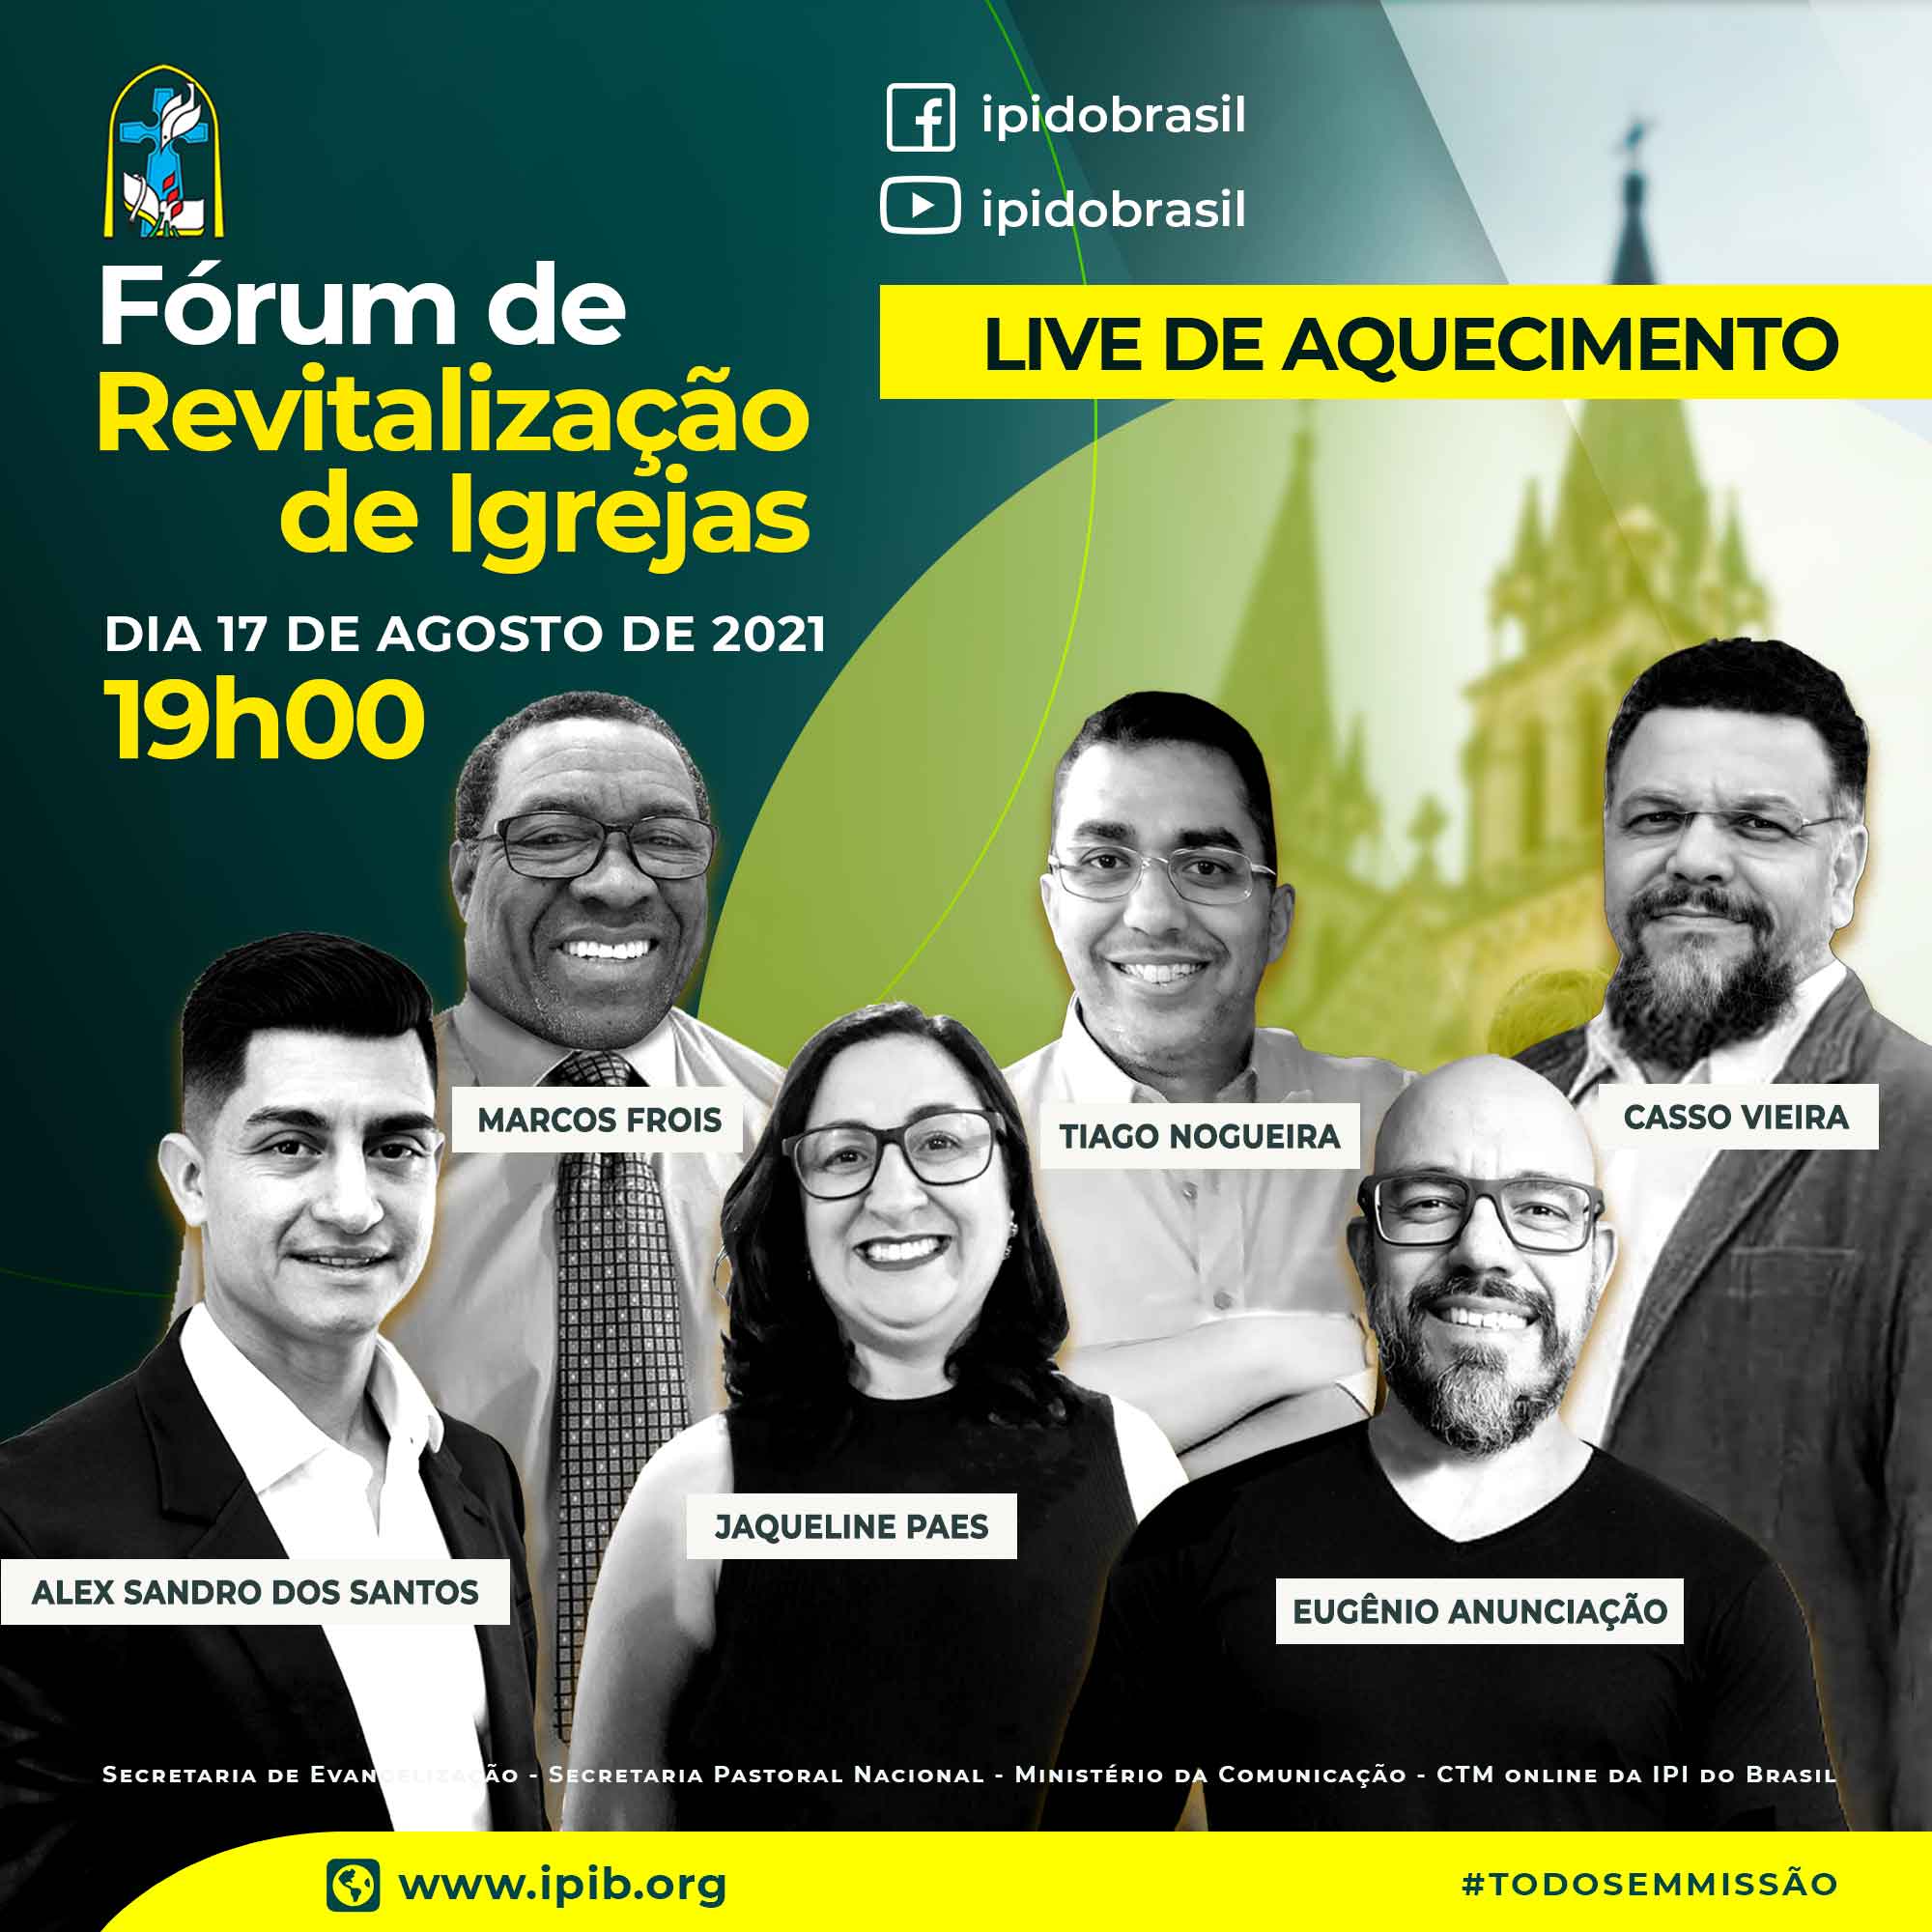 Live de Aquecimento: Fórum de Revitalização de Igrejas